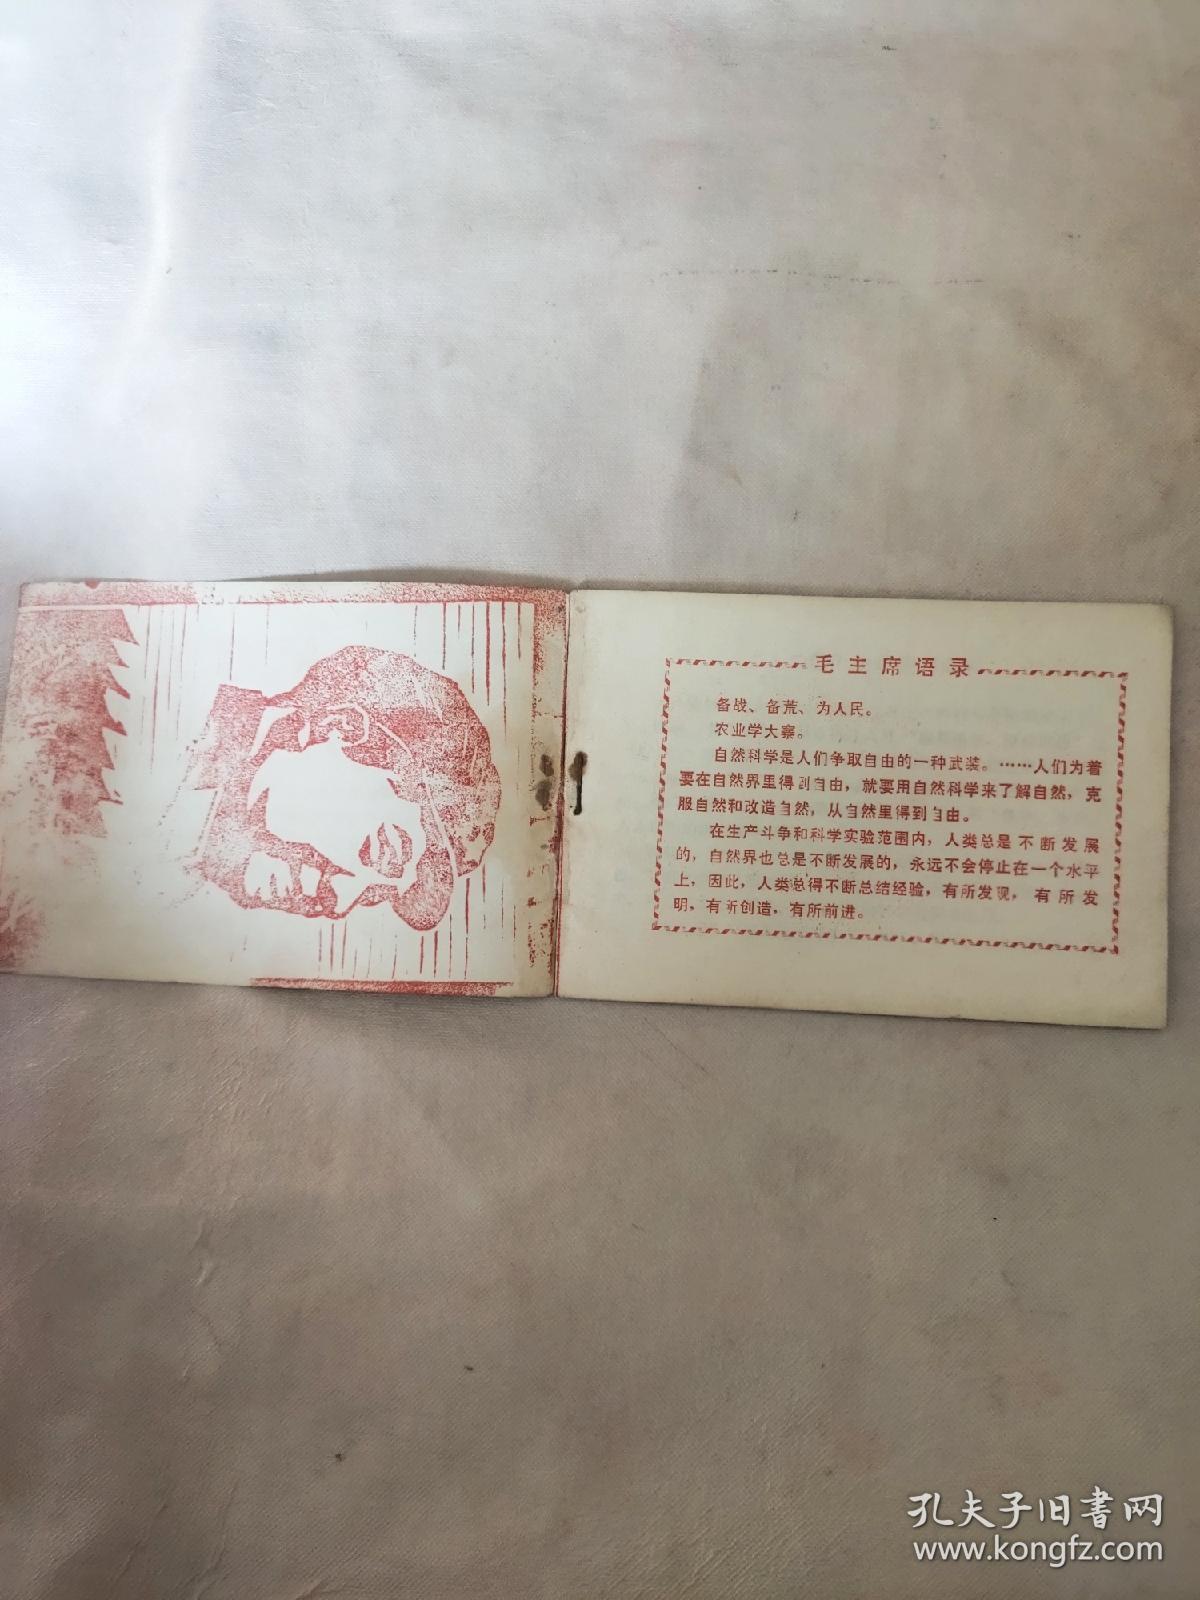 1971年锦州市农业生产资料公司:920农药使用说明(本说明书封底内页盖有毛主席头像图案大红印章4枚，详见如图)极具收藏价值。